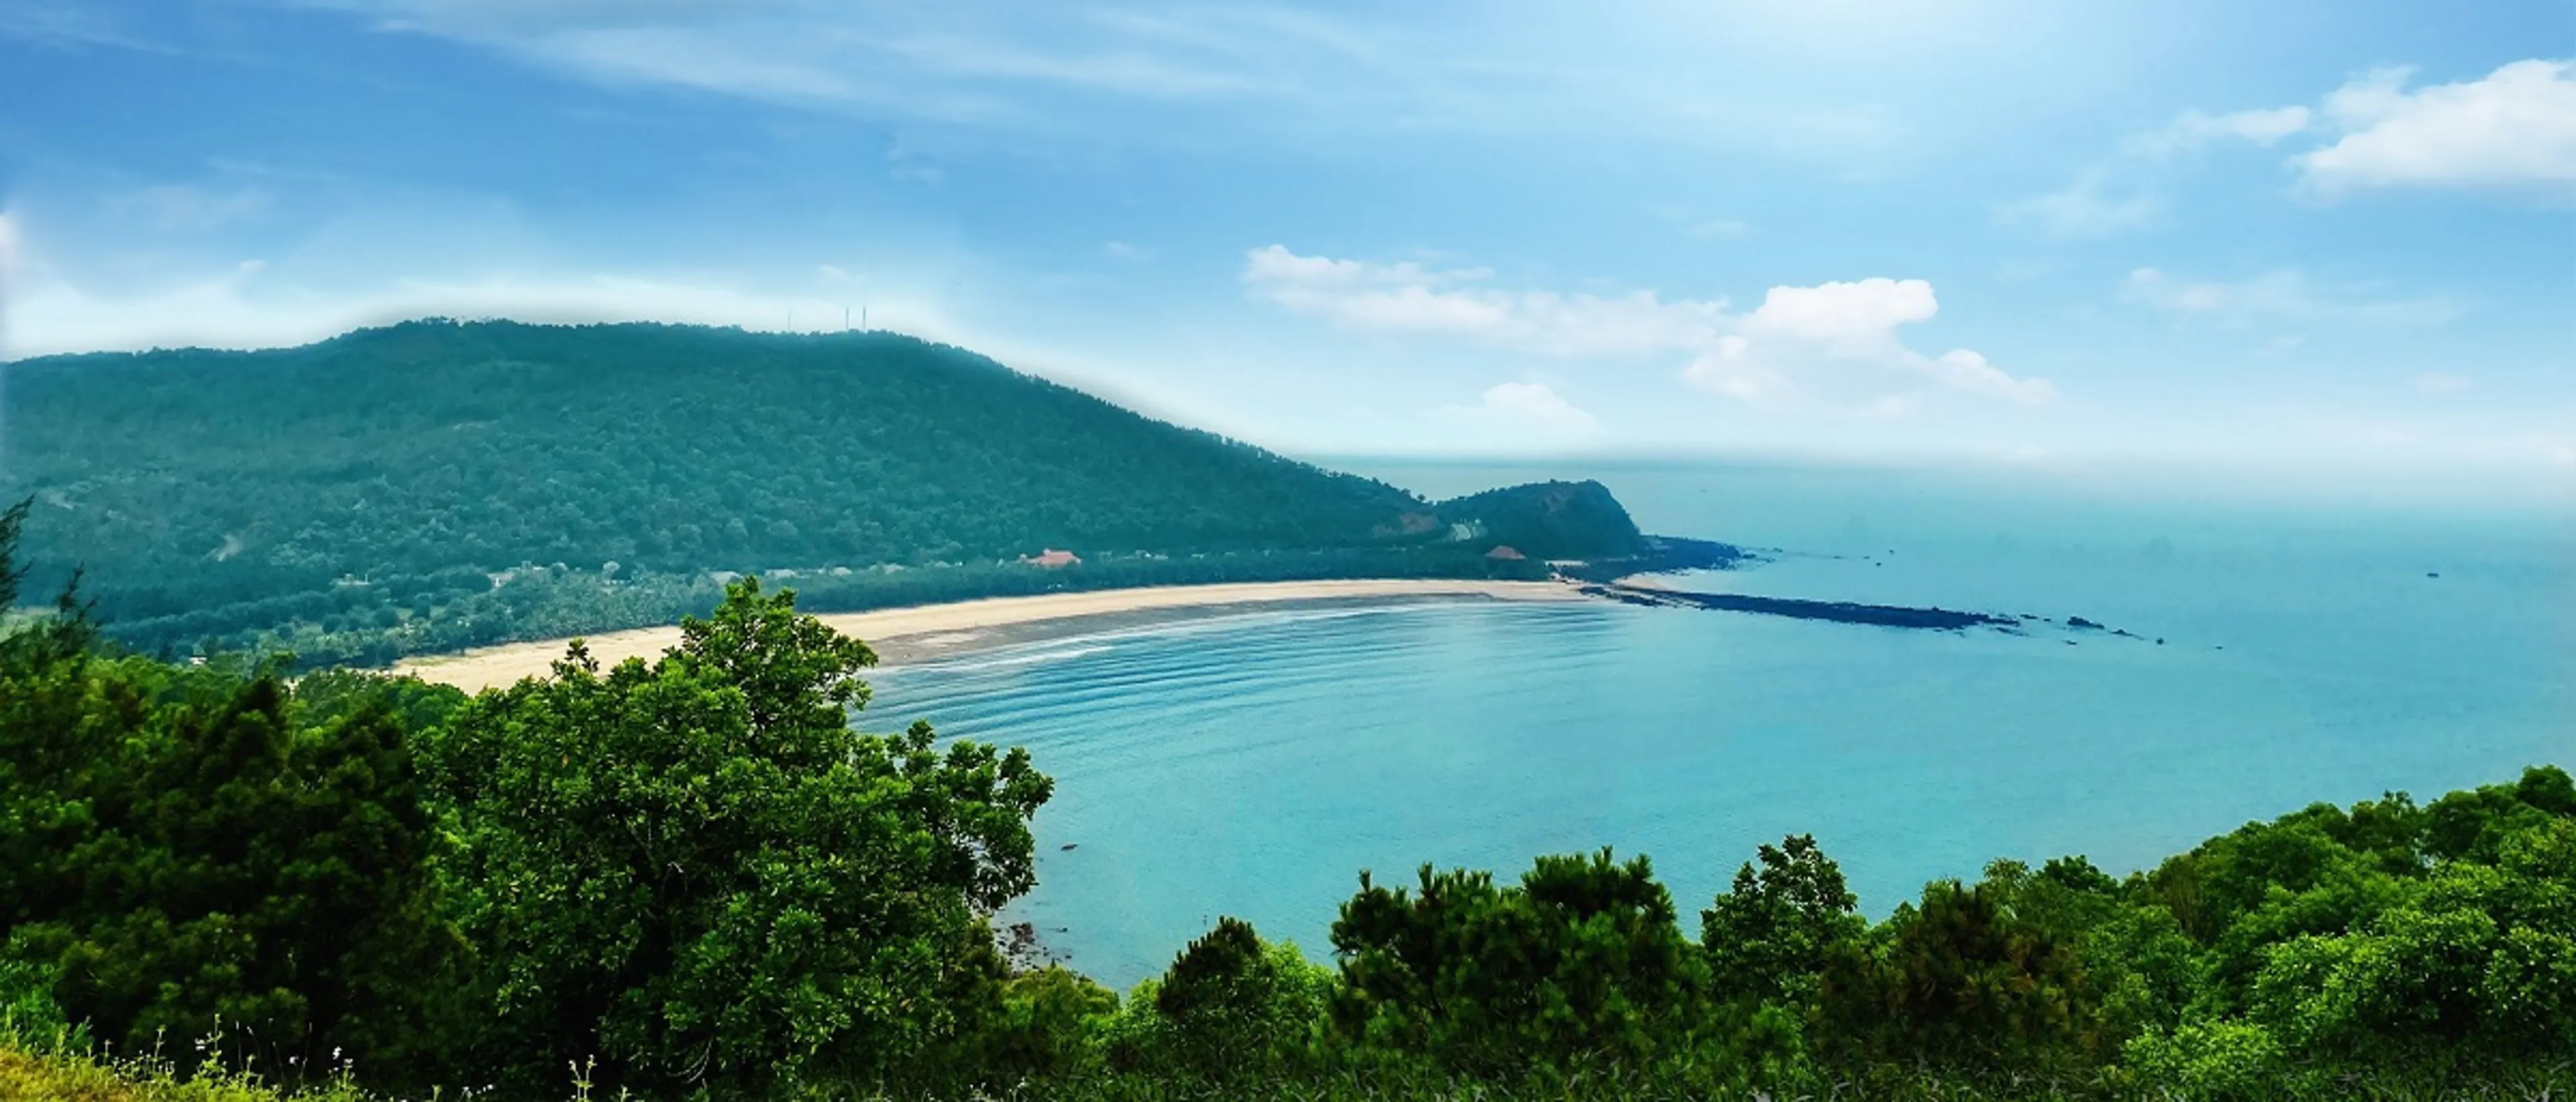 Du lịch Bãi Lữ Nghệ An chiêm ngưỡng nước biển trong vắt cát trắng mịn nắng vàng